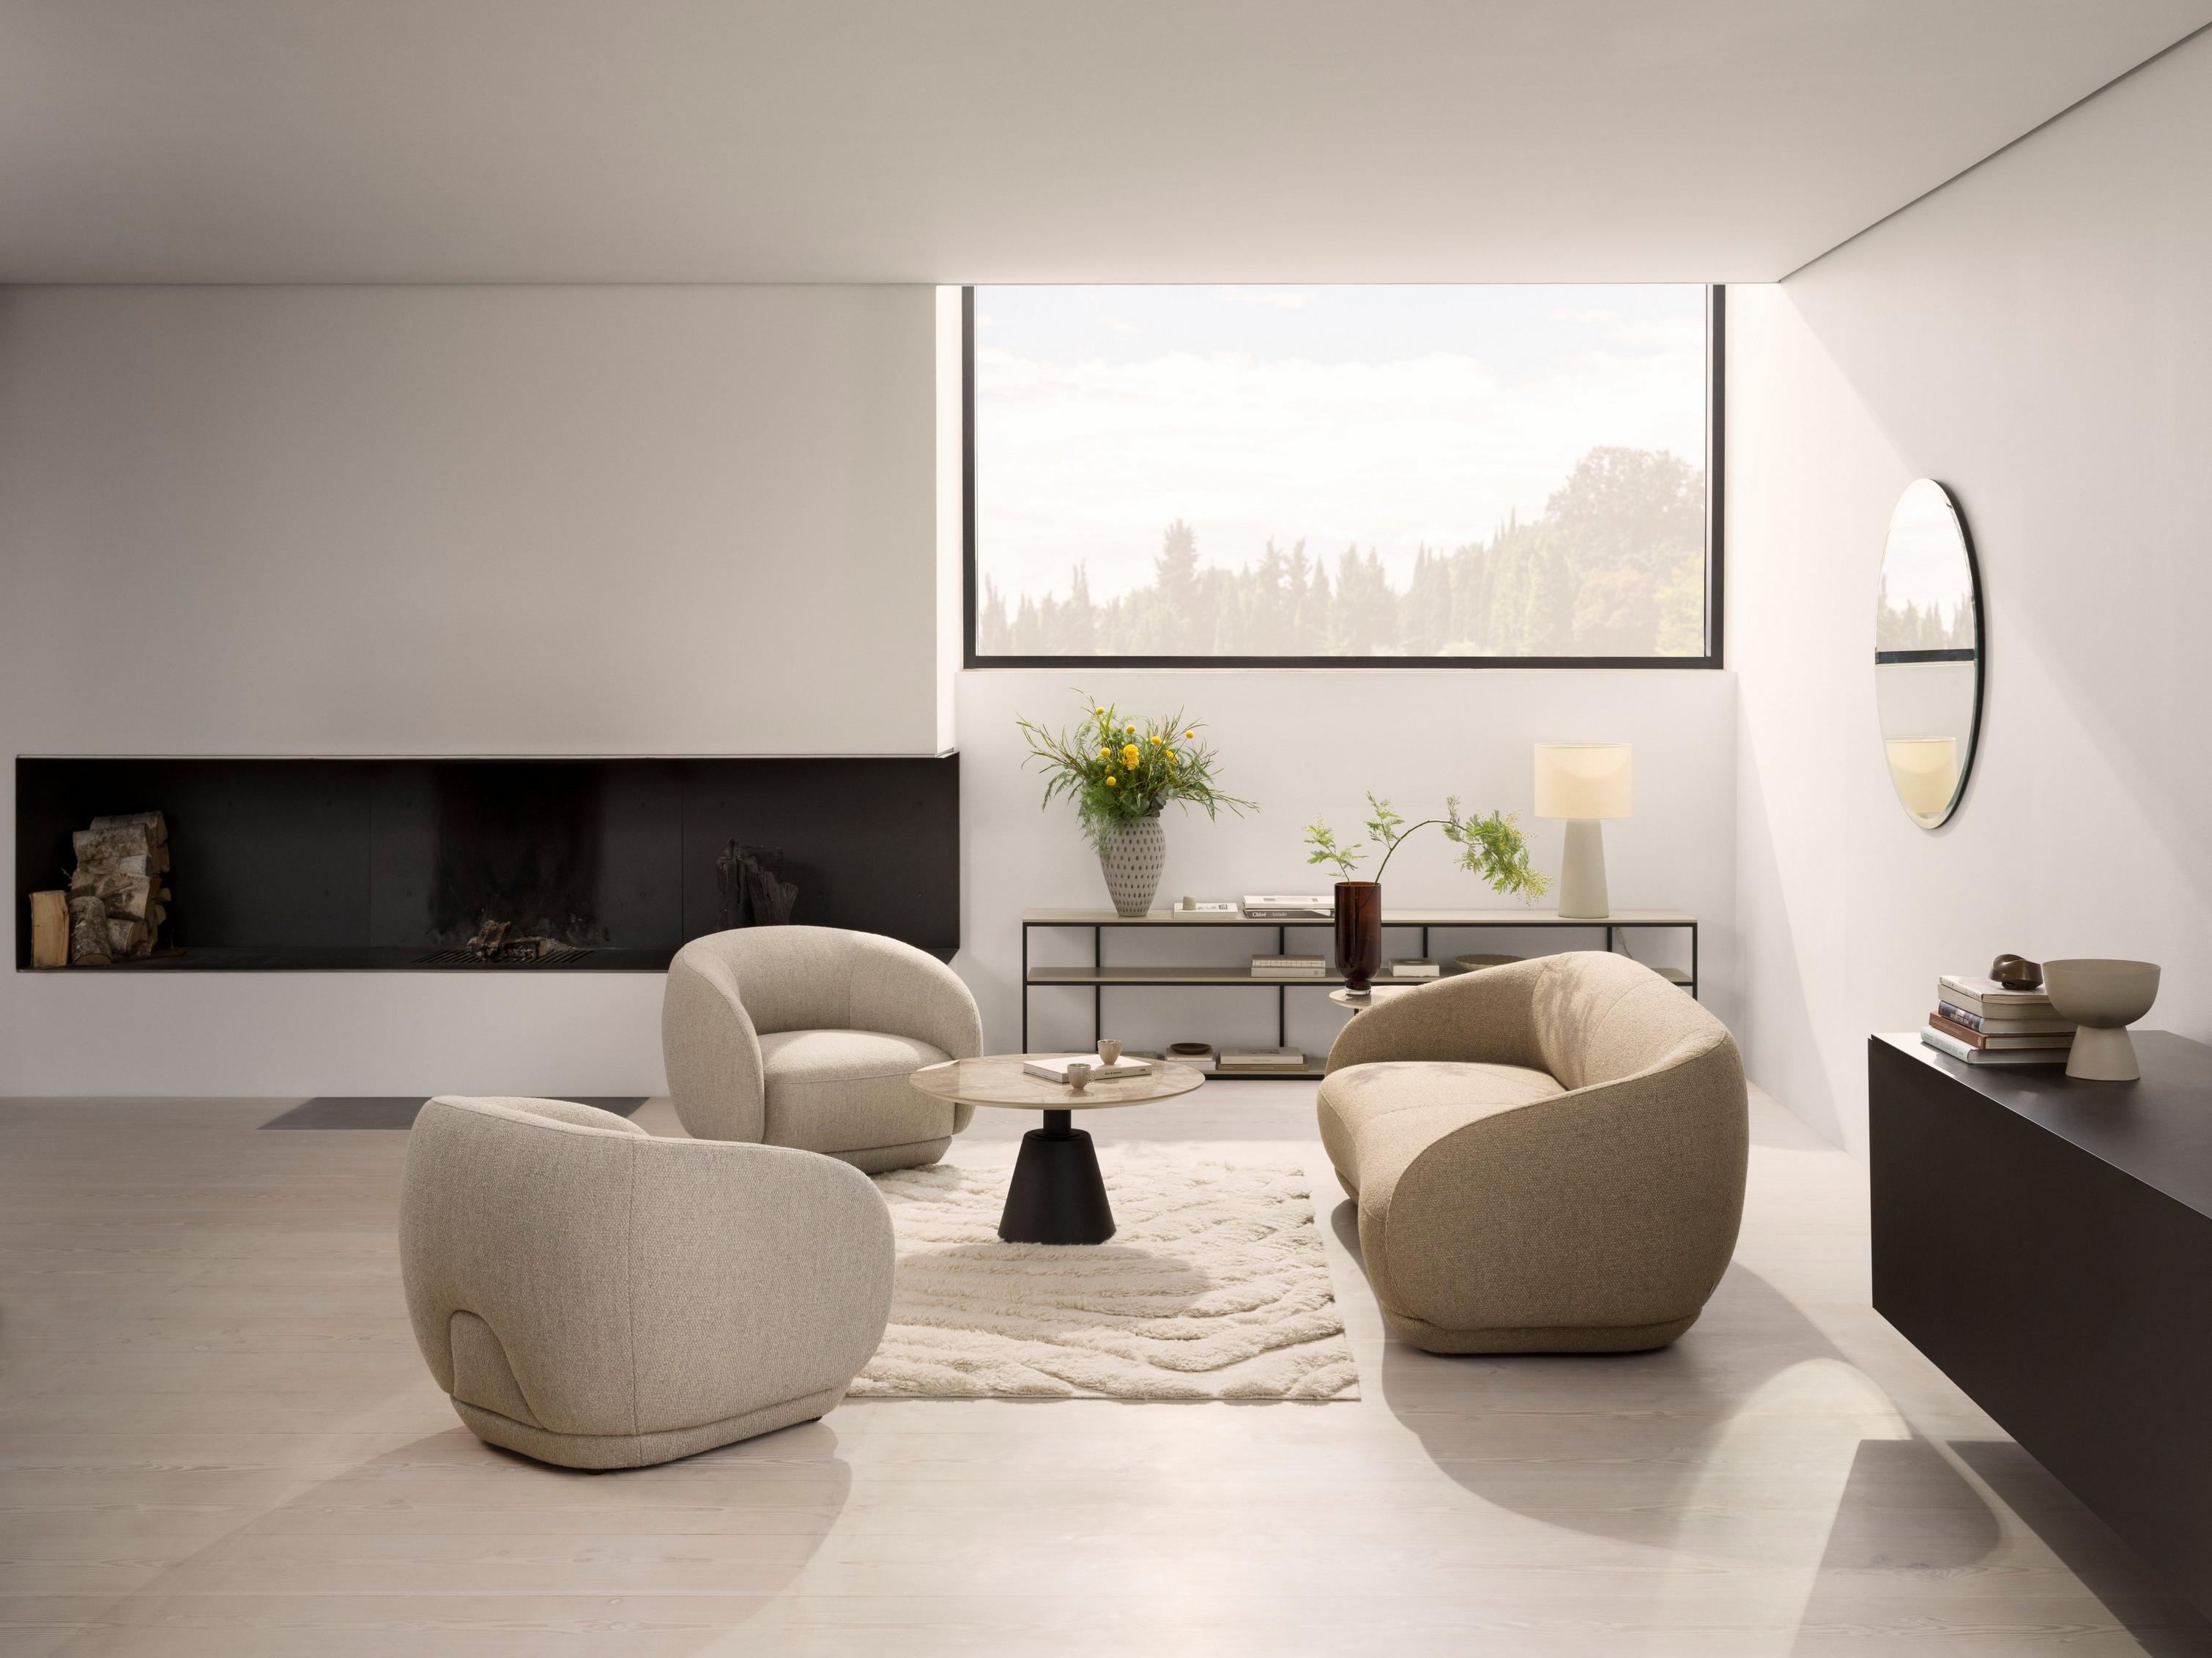 棕色 Lazio 面料 Bolzano 沙发打造现代起居室。